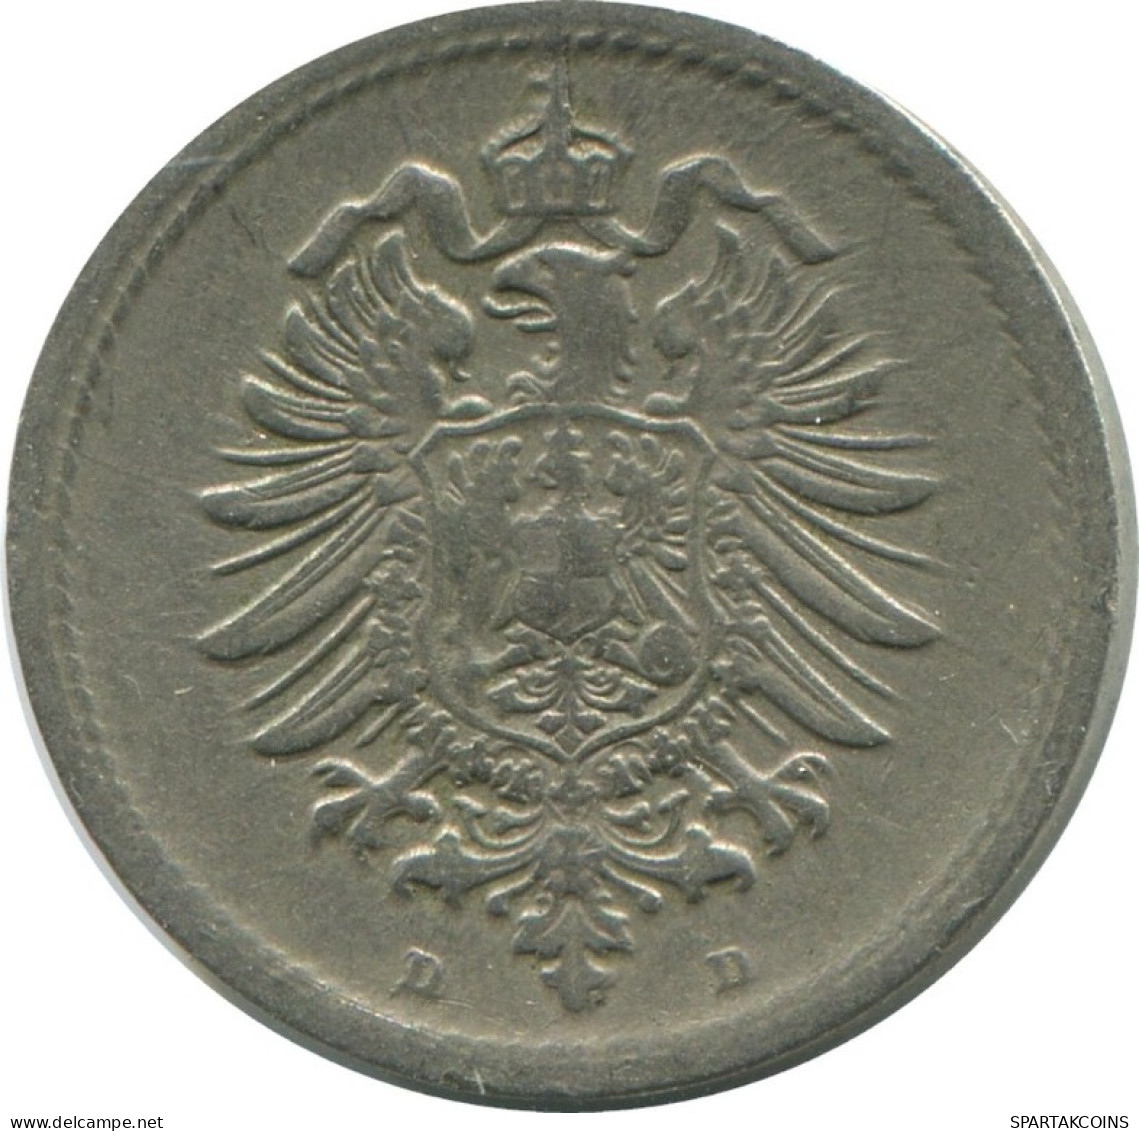 5 PFENNIG 1876 D GERMANY Coin #AD540.9.U.A - 5 Pfennig